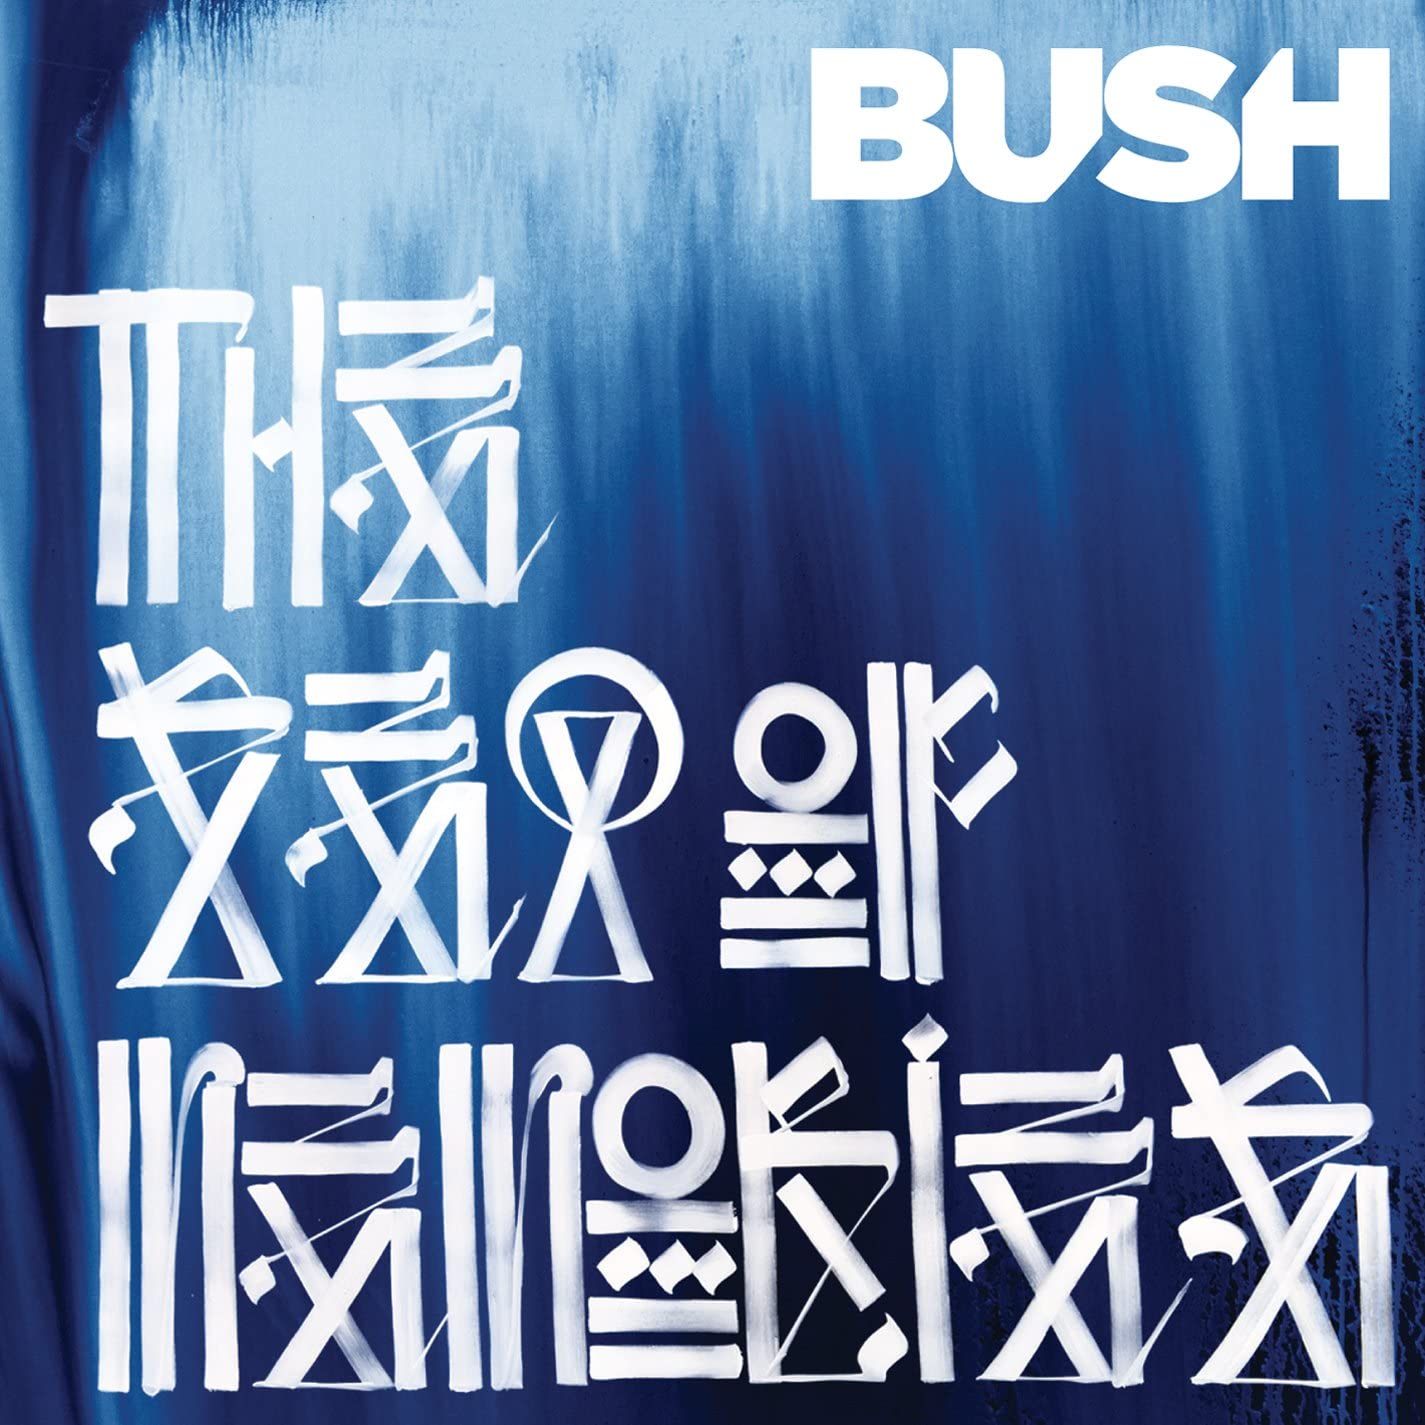 Bush The Sea of Memories cover artwork